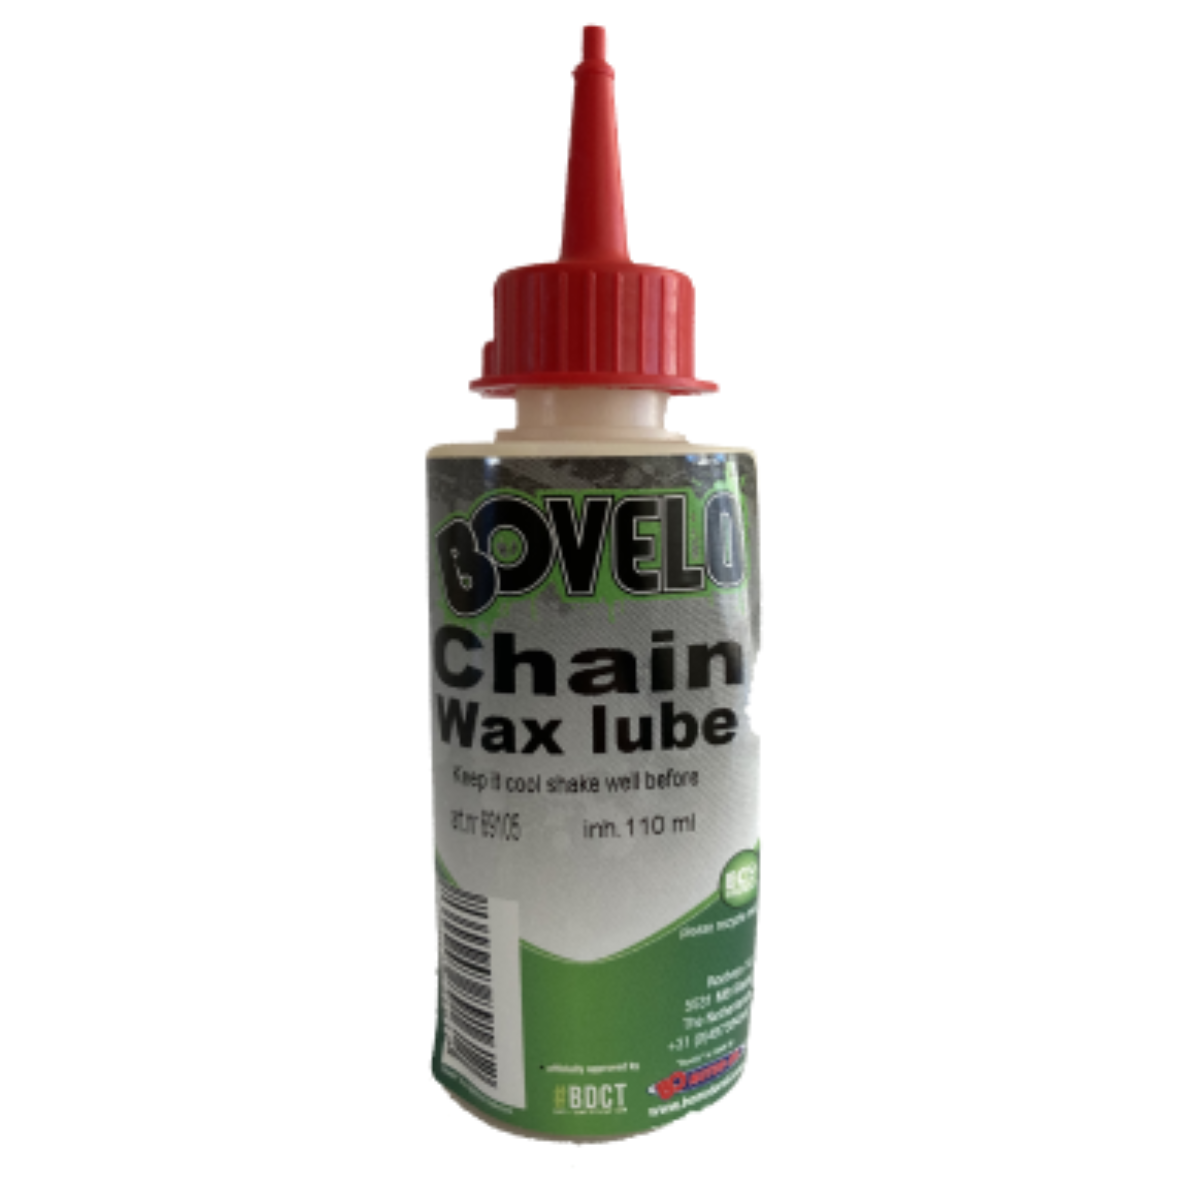 Bovelo Chain Wax Lube 110 ml